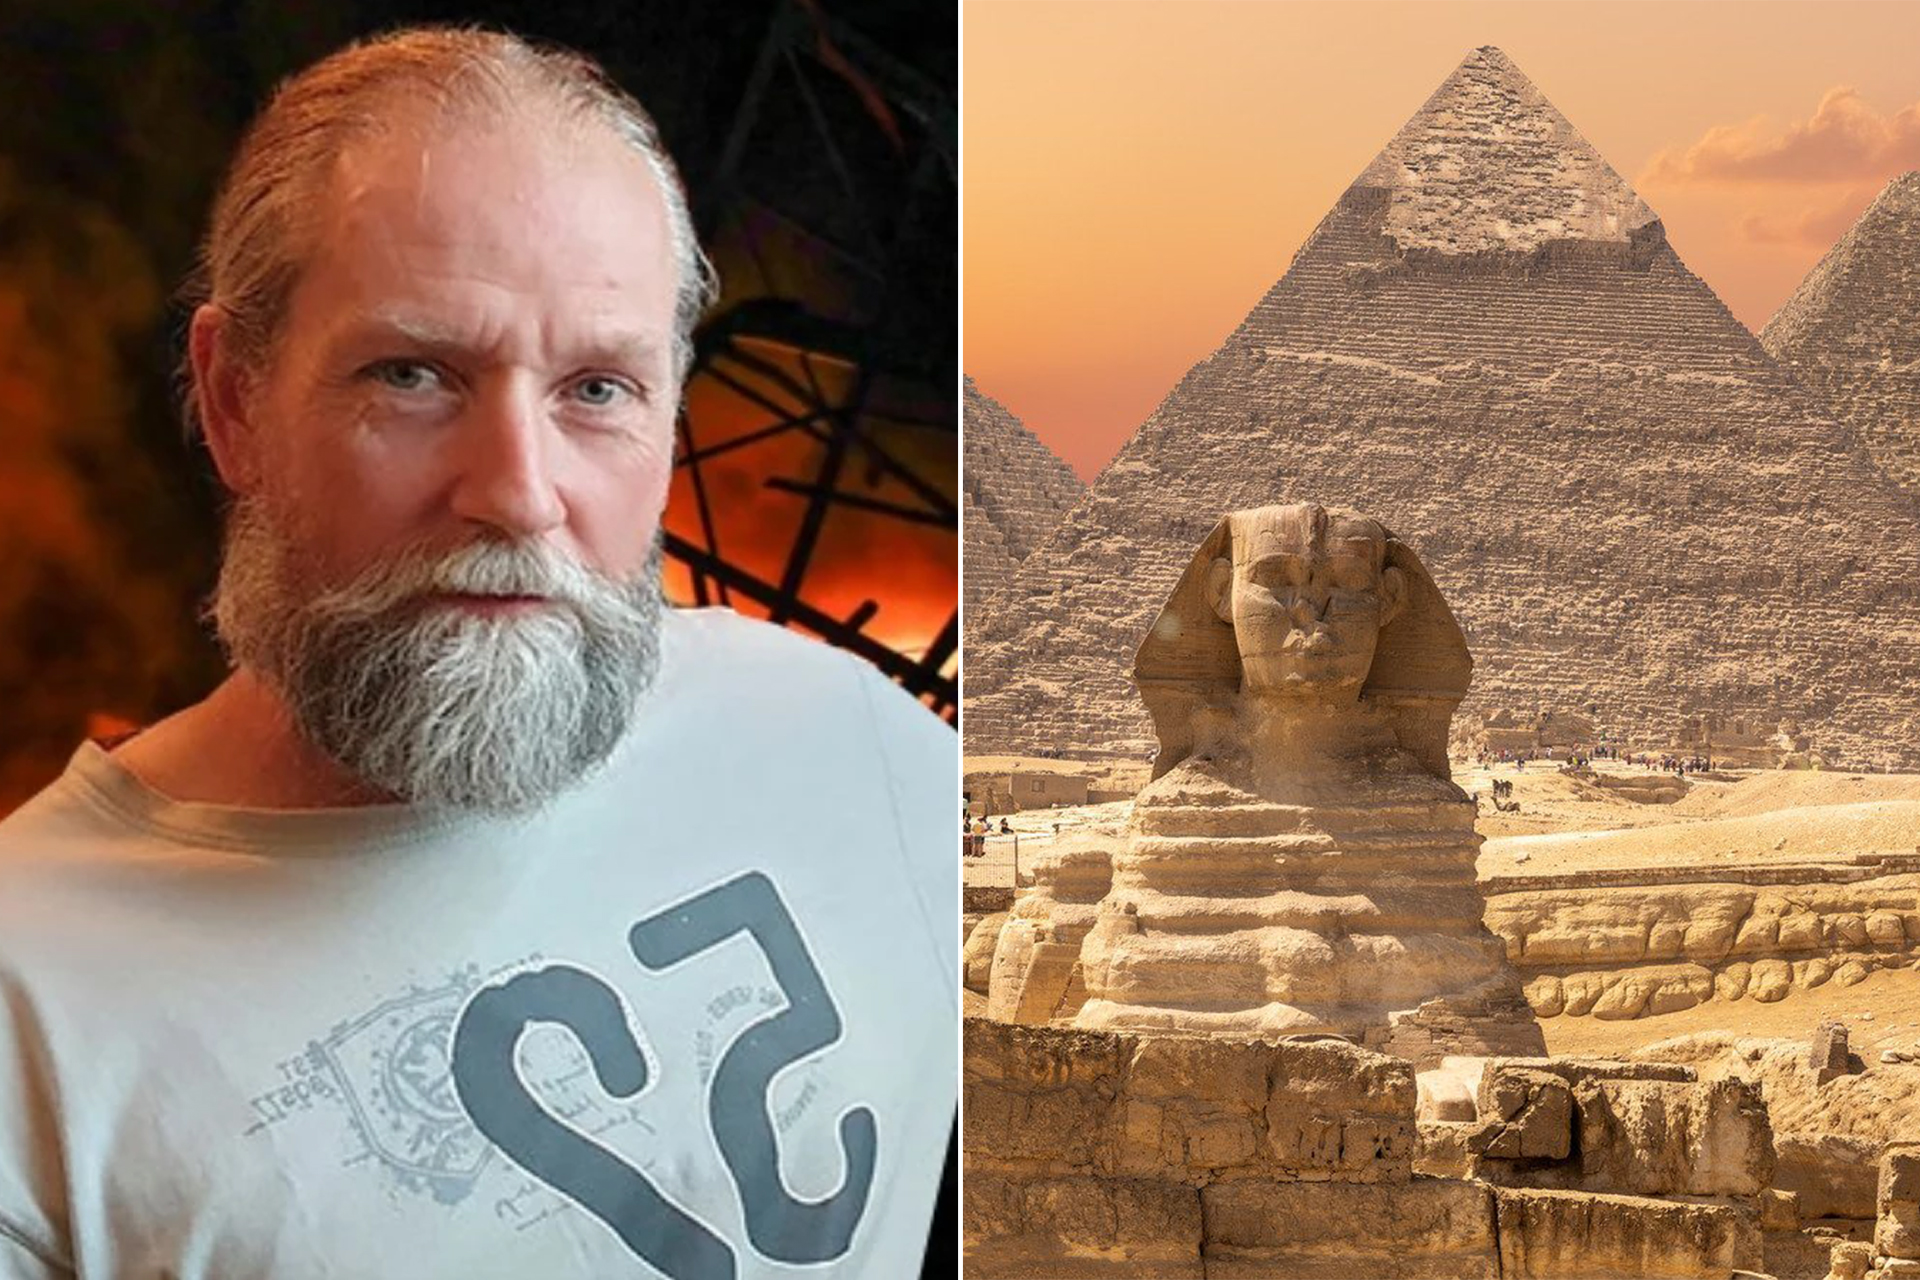 Prédictions de tremblements de terre par un expert néerlandais sur les pyramides d'Égypte enflamme les réseaux sociaux